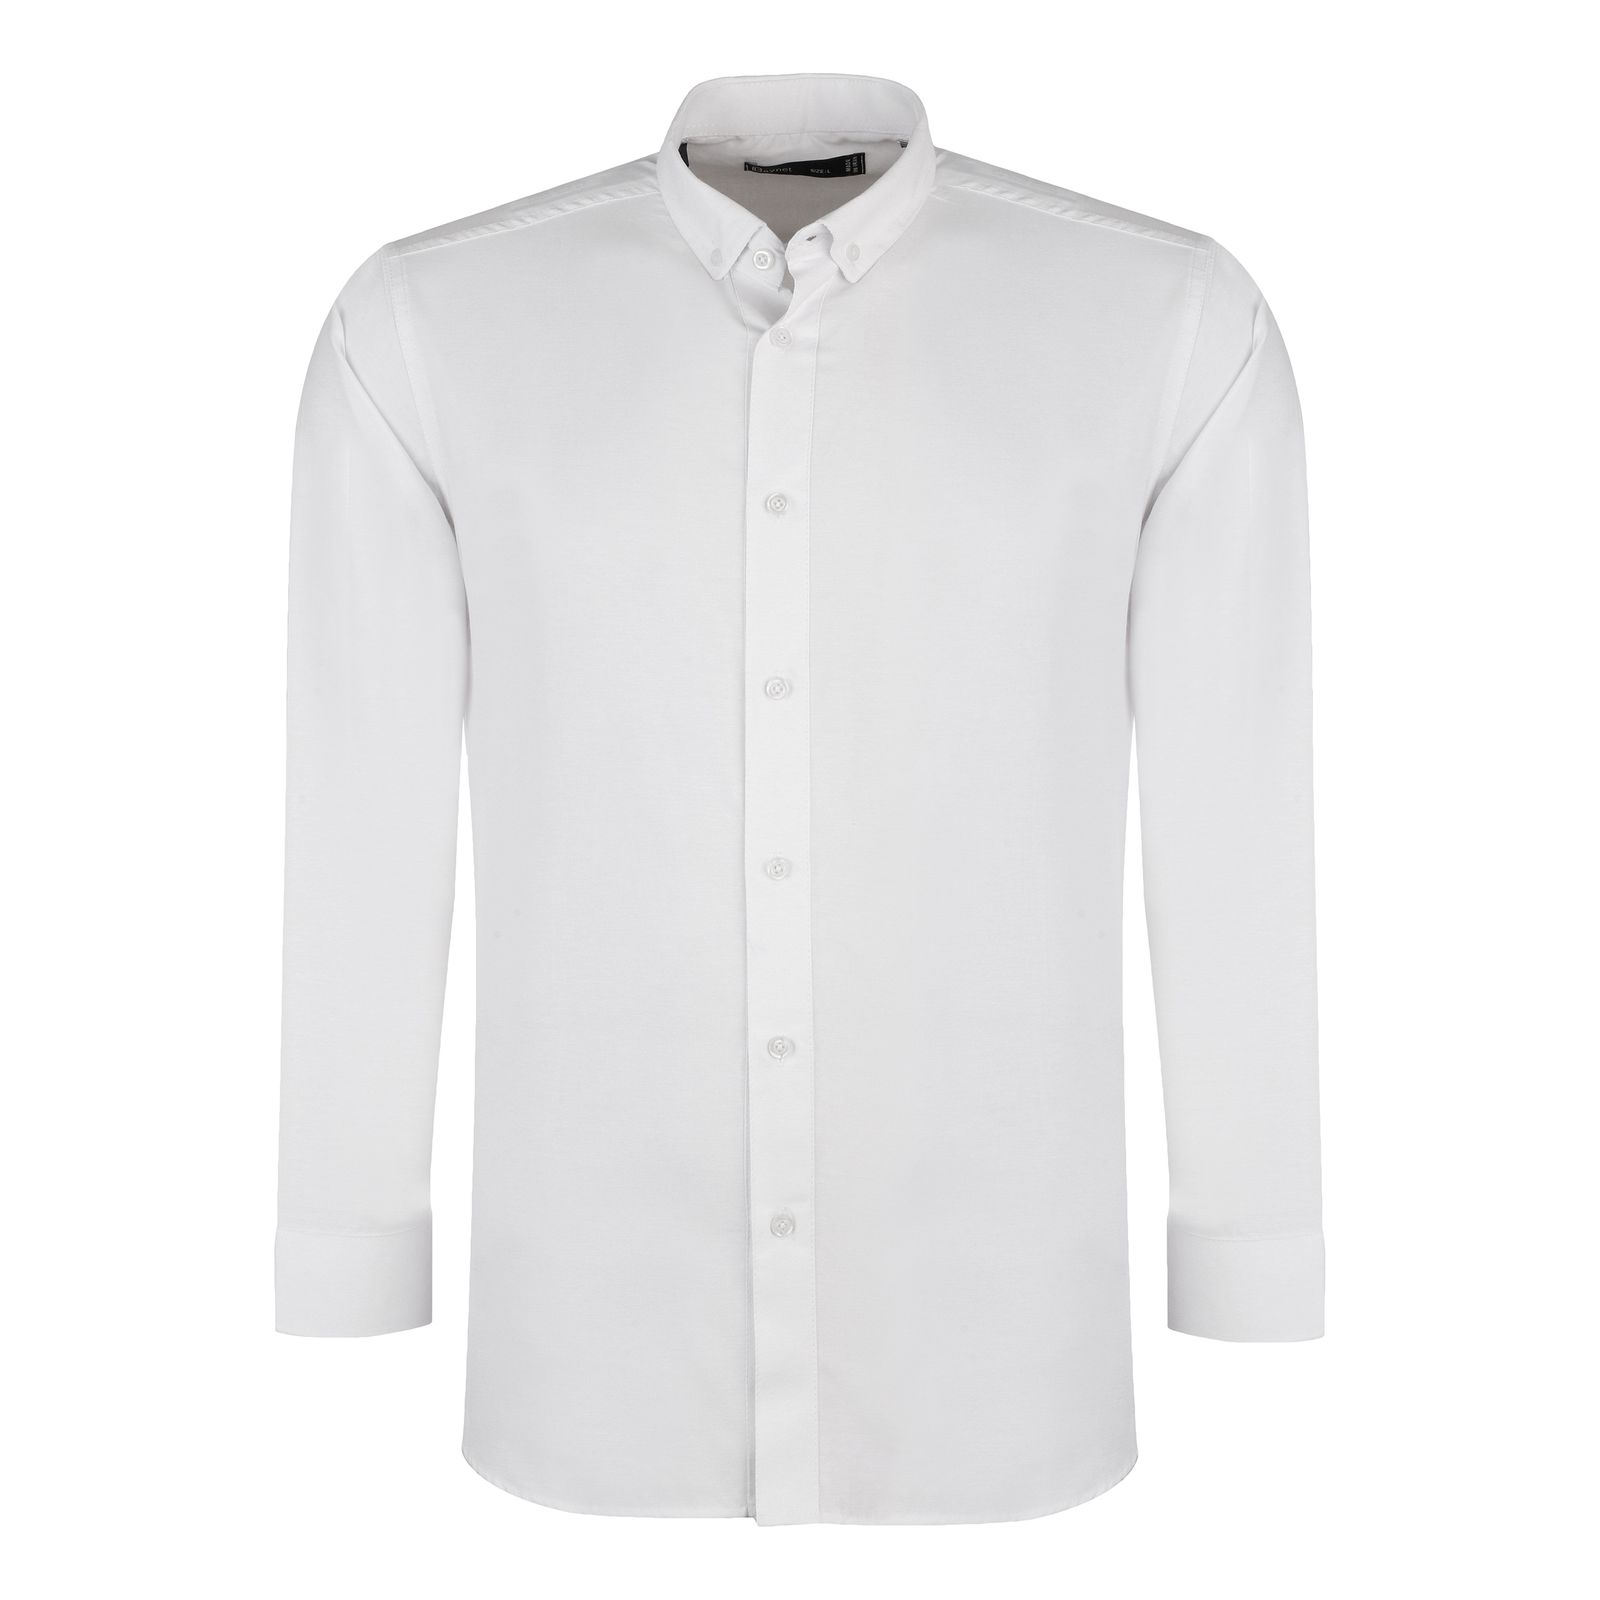 پیراهن آستین بلند مردانه باینت مدل 2261721 رنگ سفید -  - 1